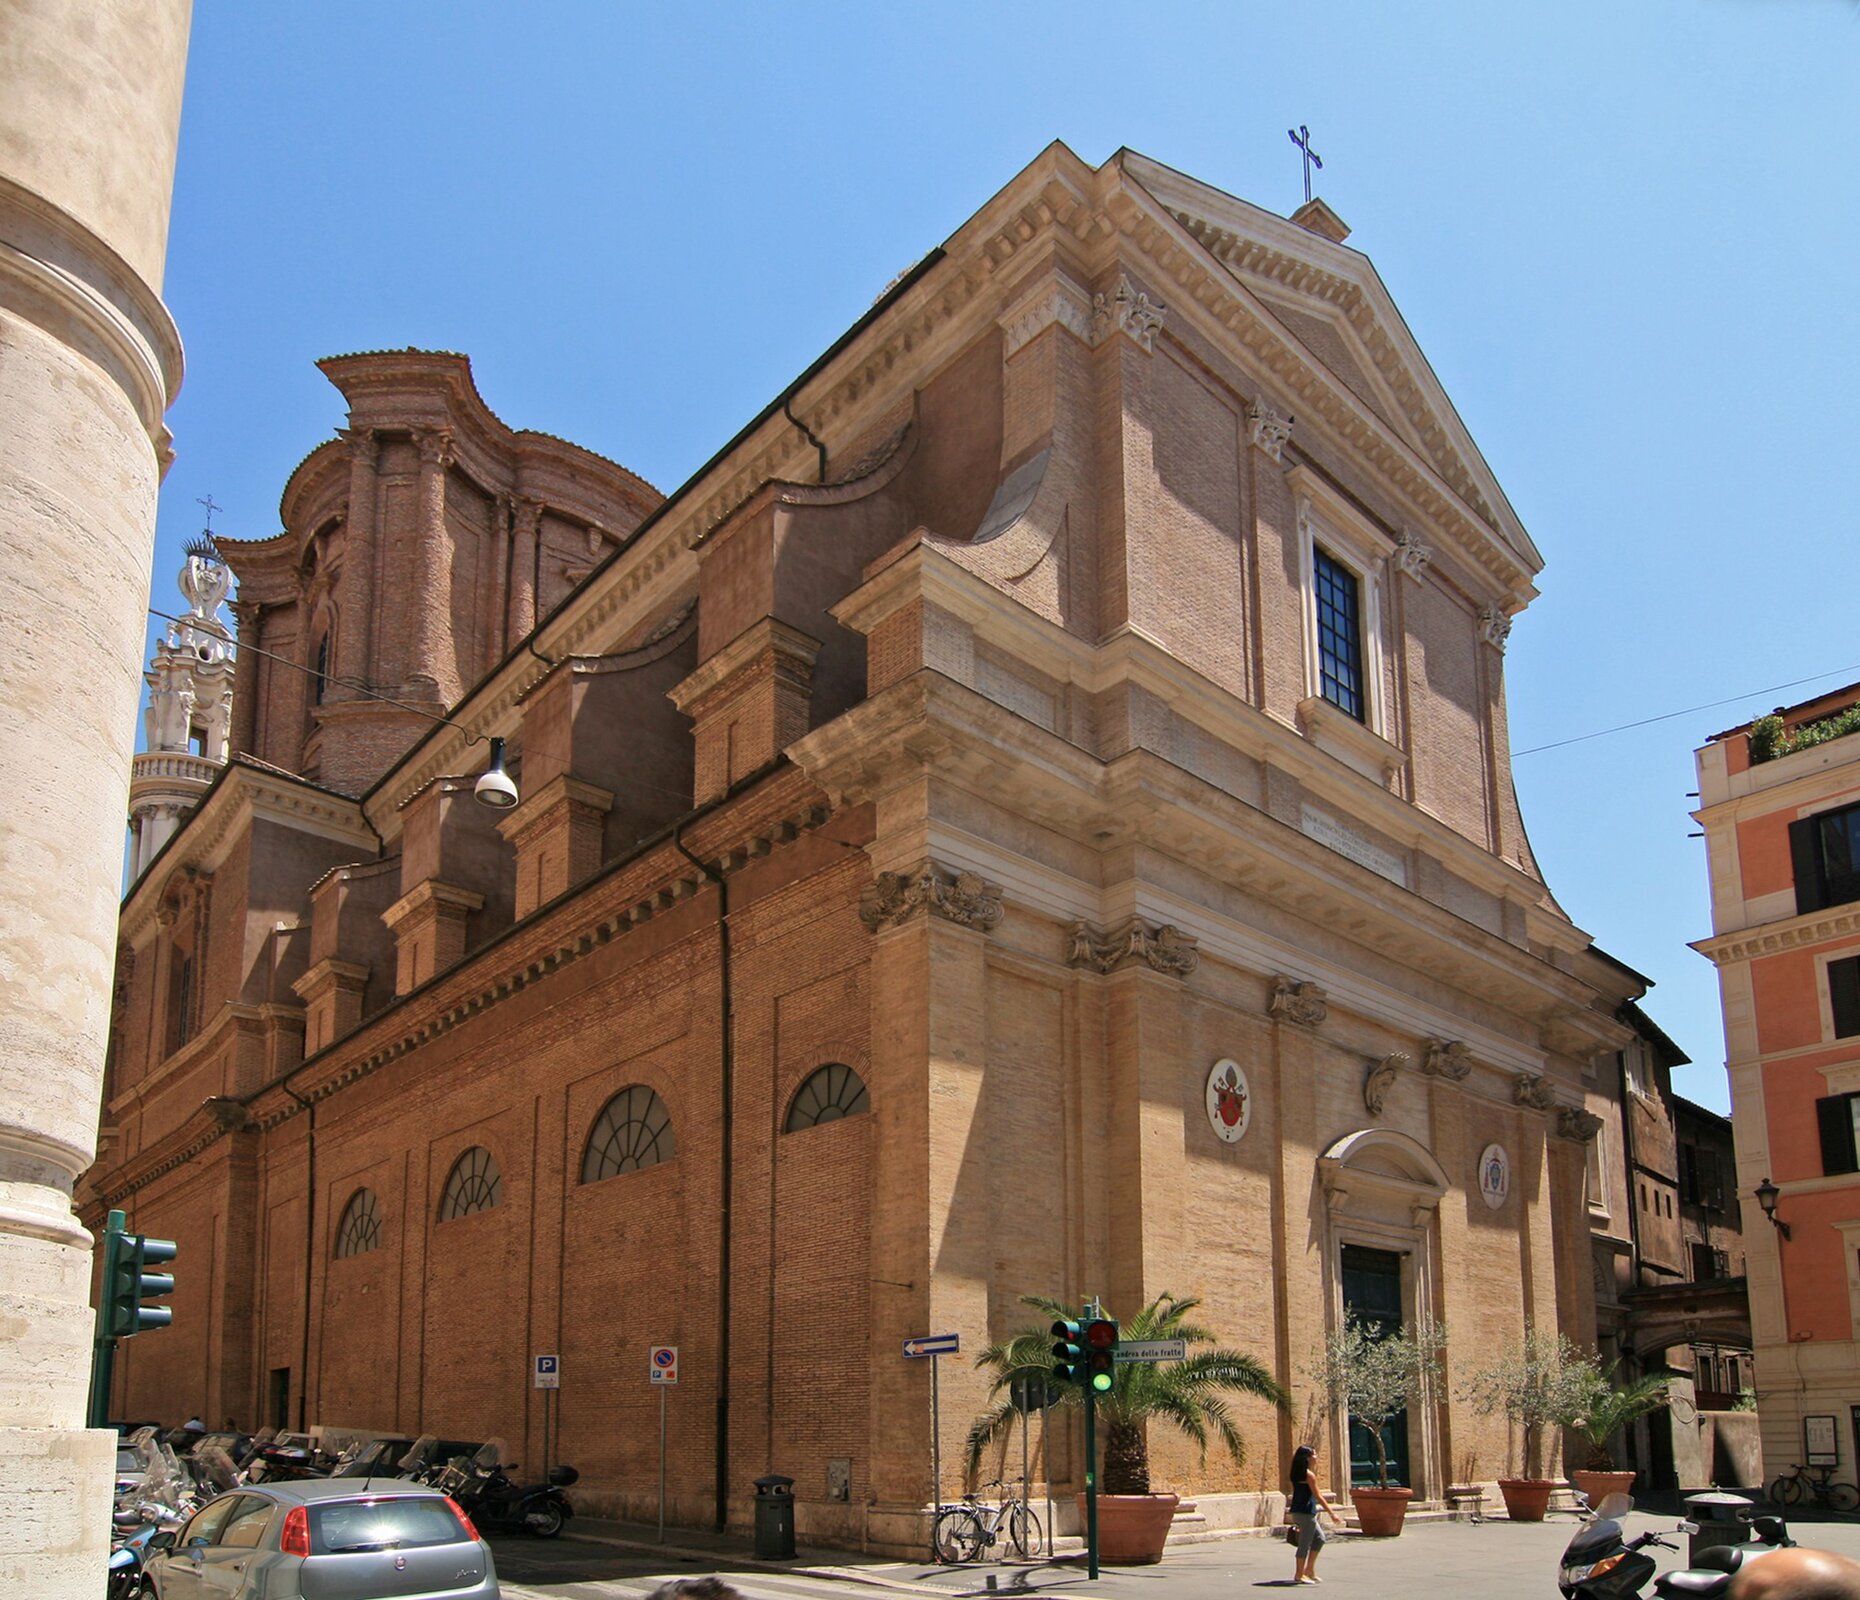 Ilustracja o kształcie kwadratu przedstawia kościół Sant Andrea delle Fratte w Rzymie. Zdjęcie zostało wykonane od strony północno-zachodniej. Ukazuje dwukondygnacyjną budowlę z cegły z detalami architektonicznymi z kamienia lub stiuku. Pierwsza kondygnacja fasady dekorowana jest sześcioma jońskimi pilastrami, jej część środkowa z czterema pilastrami jest lekko wysunięta do przodu. Pilastry podtrzymują belkę z fryzem i wystającym gzymsem. Drzwi wejściowe mają podniesiony fronton na wspornikach, a nad nim tarczę z herbem rodziny Del Bufalo. Druga kondygnacja znajduje się na cokole z pięcioma wpuszczonymi prostokątnymi panelami. Nad cokołem cztery ceglane pilastry korynckie podtrzymują belkę z trójkątnym frontonem o niewypełnionym tympanonie.